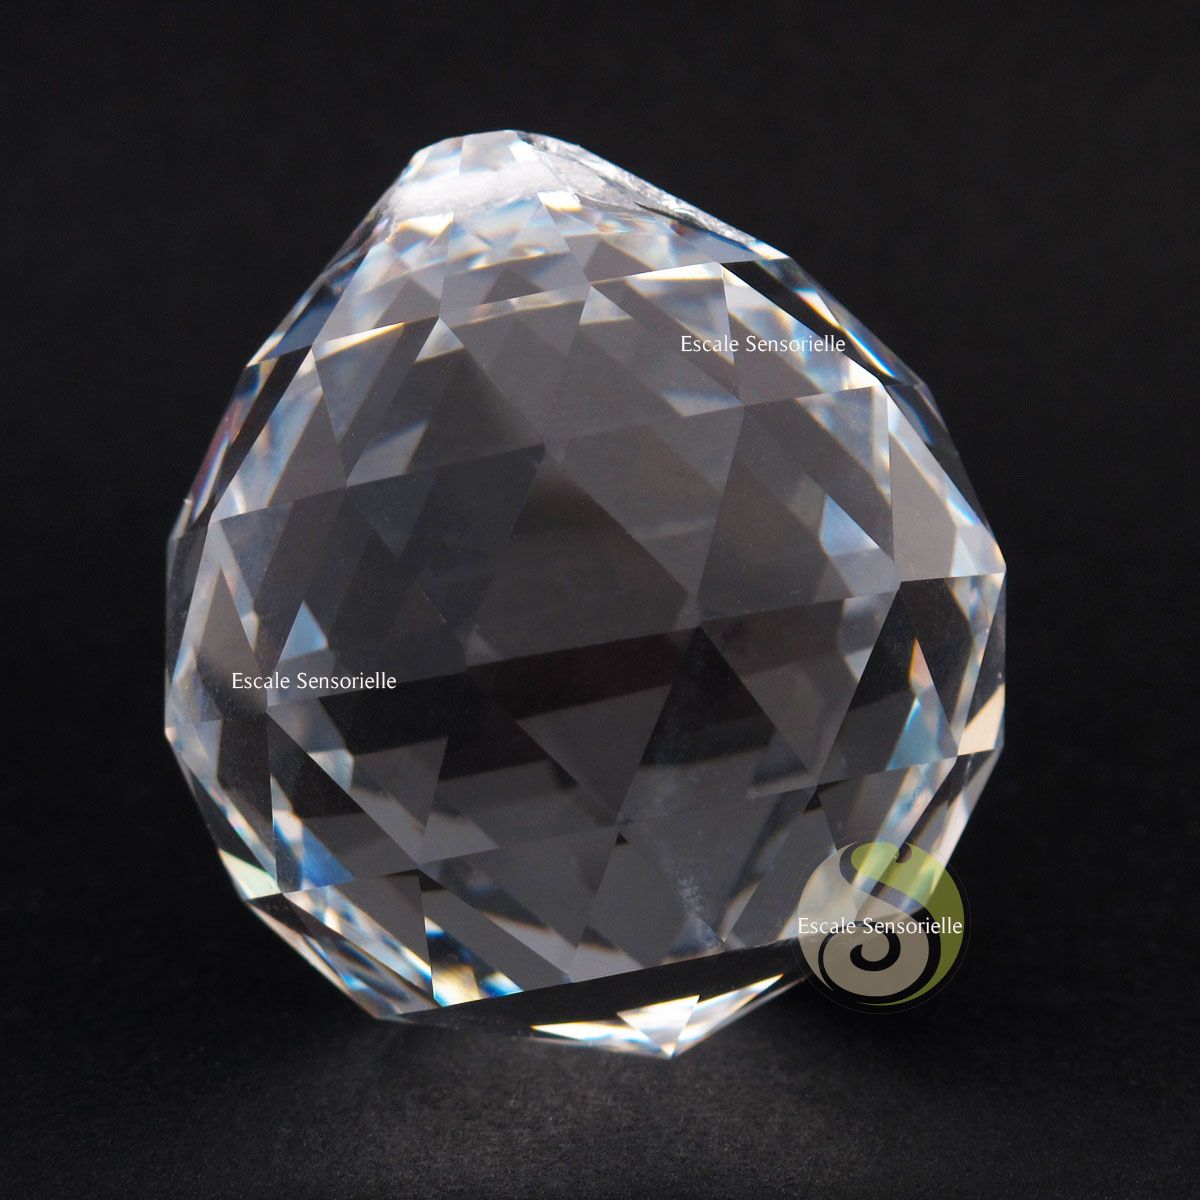 1 Pièce Cristal Suncatcher Boule Prisme Fenêtre Fabricant Arc-en-ciel, Mode en ligne